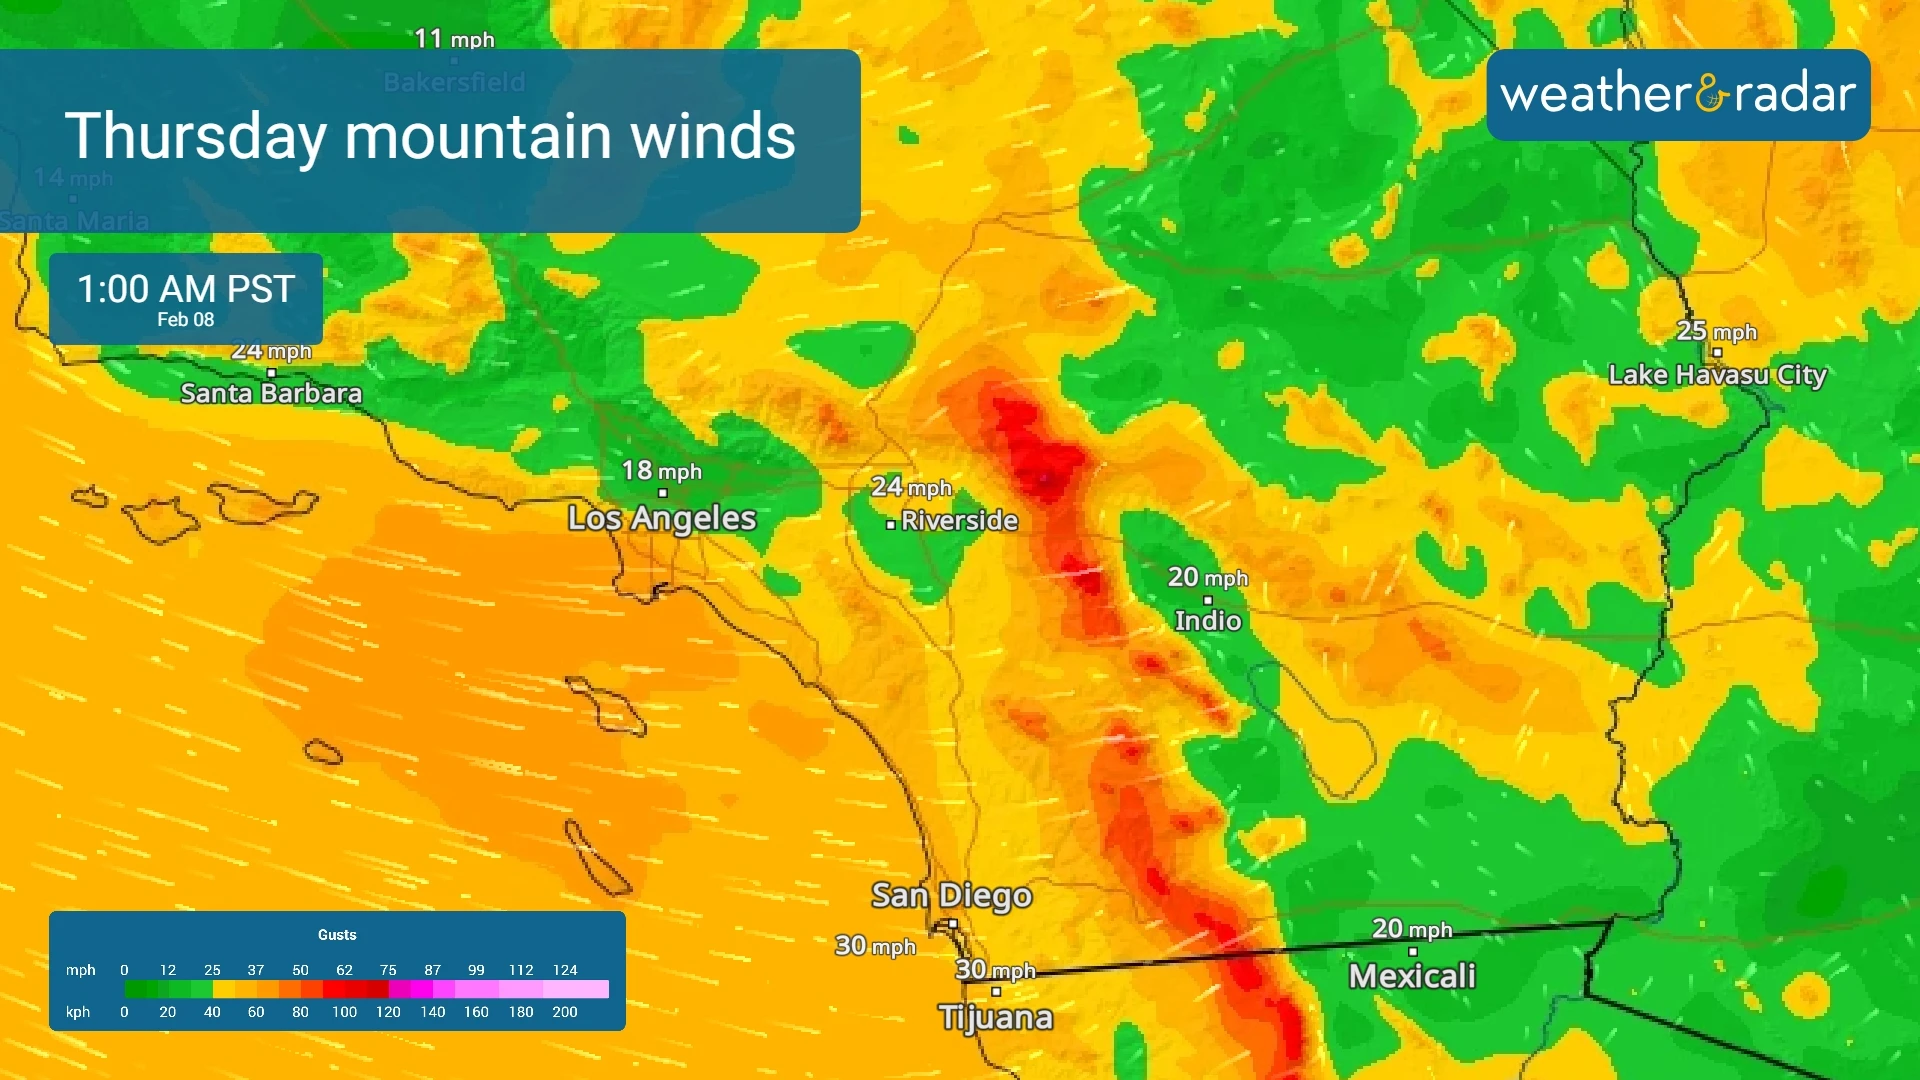 Las montañas tendrán vientos muy fuertes el jueves por la madrugada.